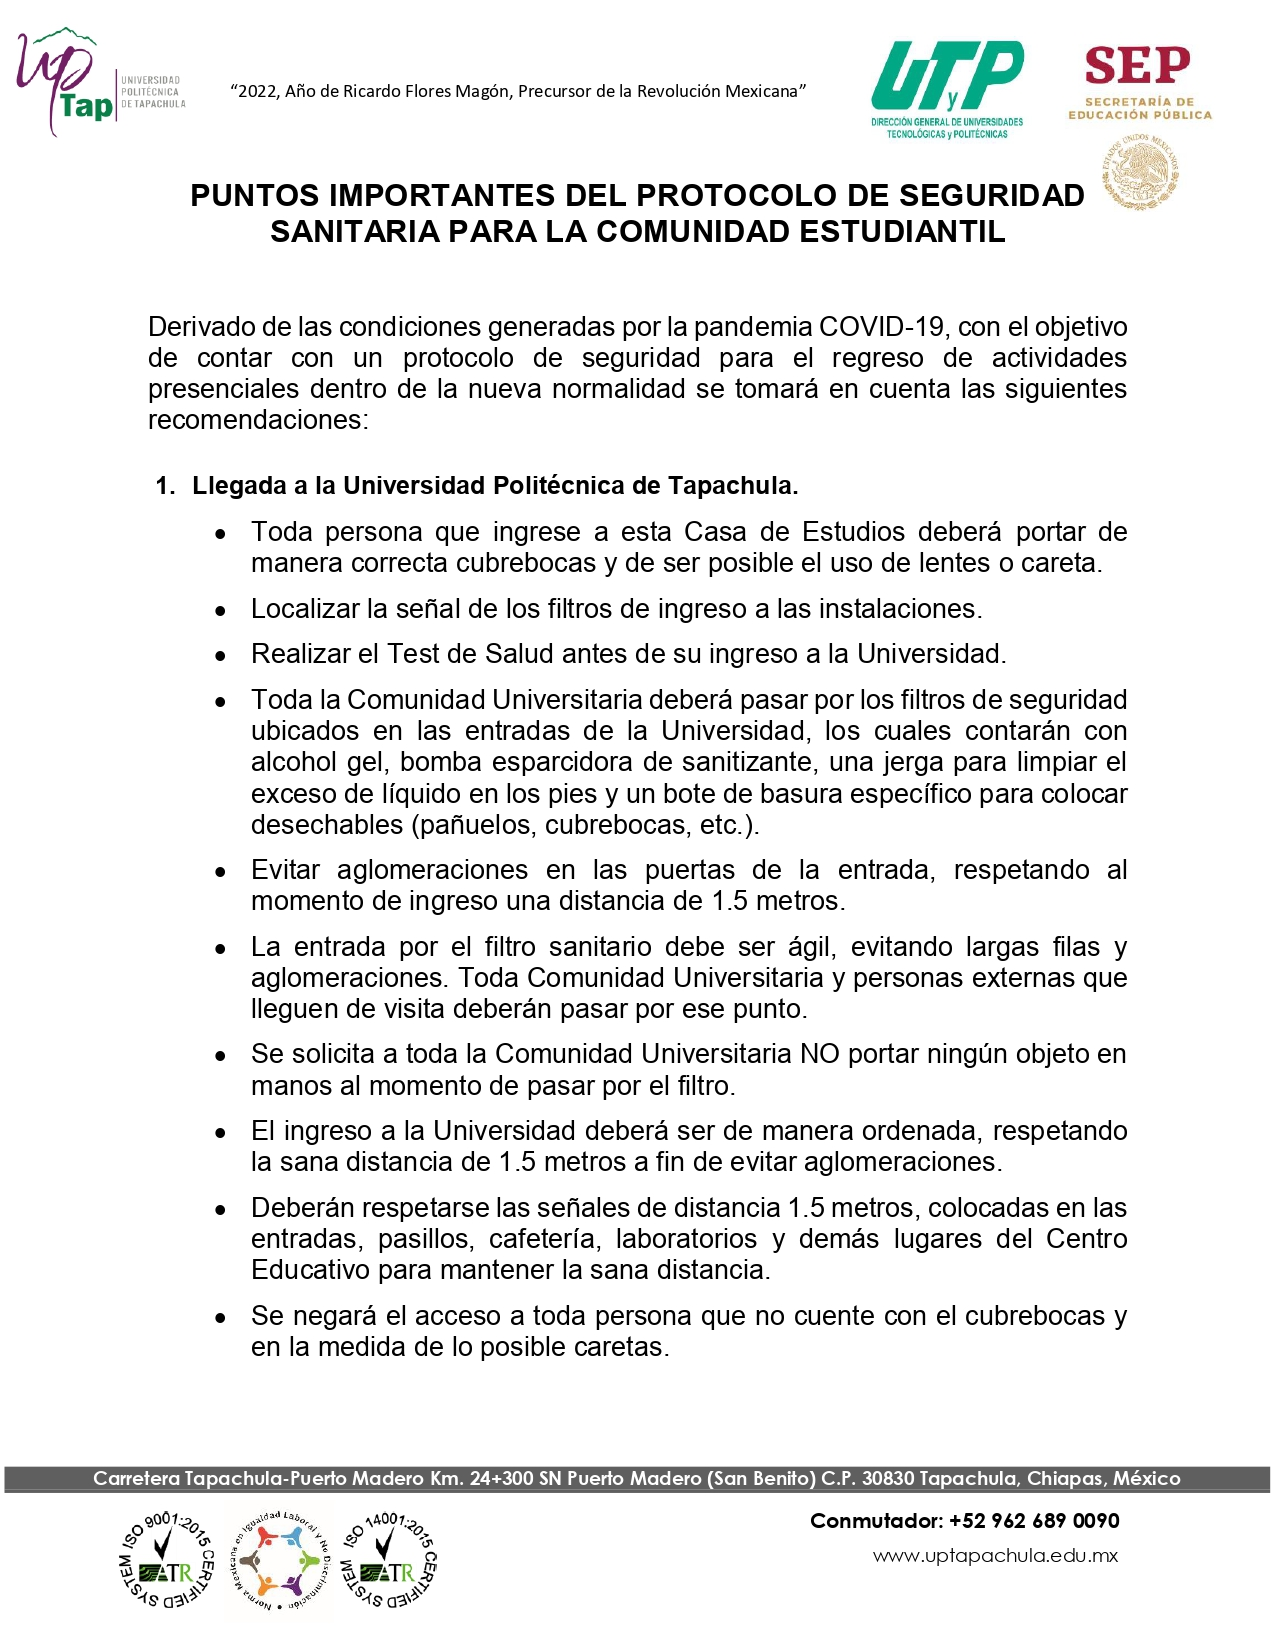 PUNTOS IMPORTANTES DEL PROTOCOLO DE SEGURIDAD SANITARIA PARA LA COMUNIDAD ESTUDIANTIL